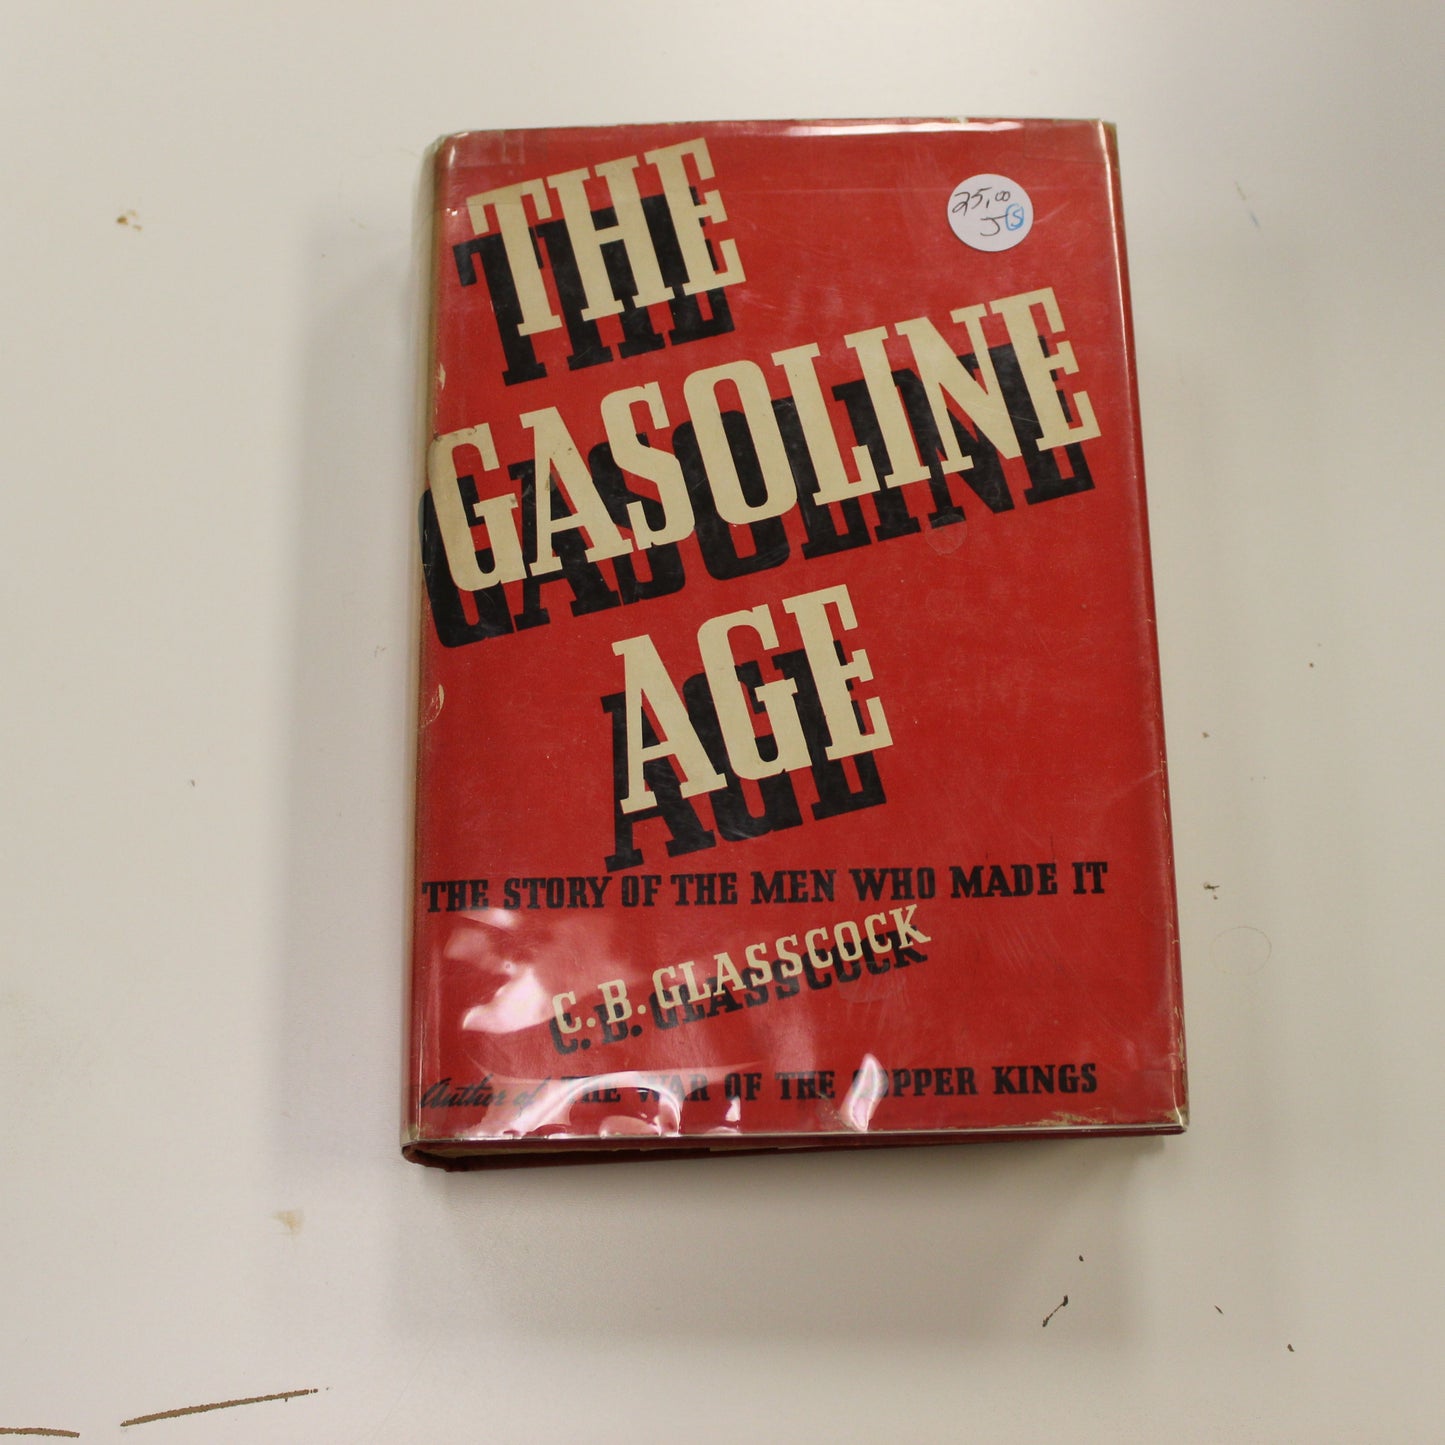 THE GASOLINE AGE